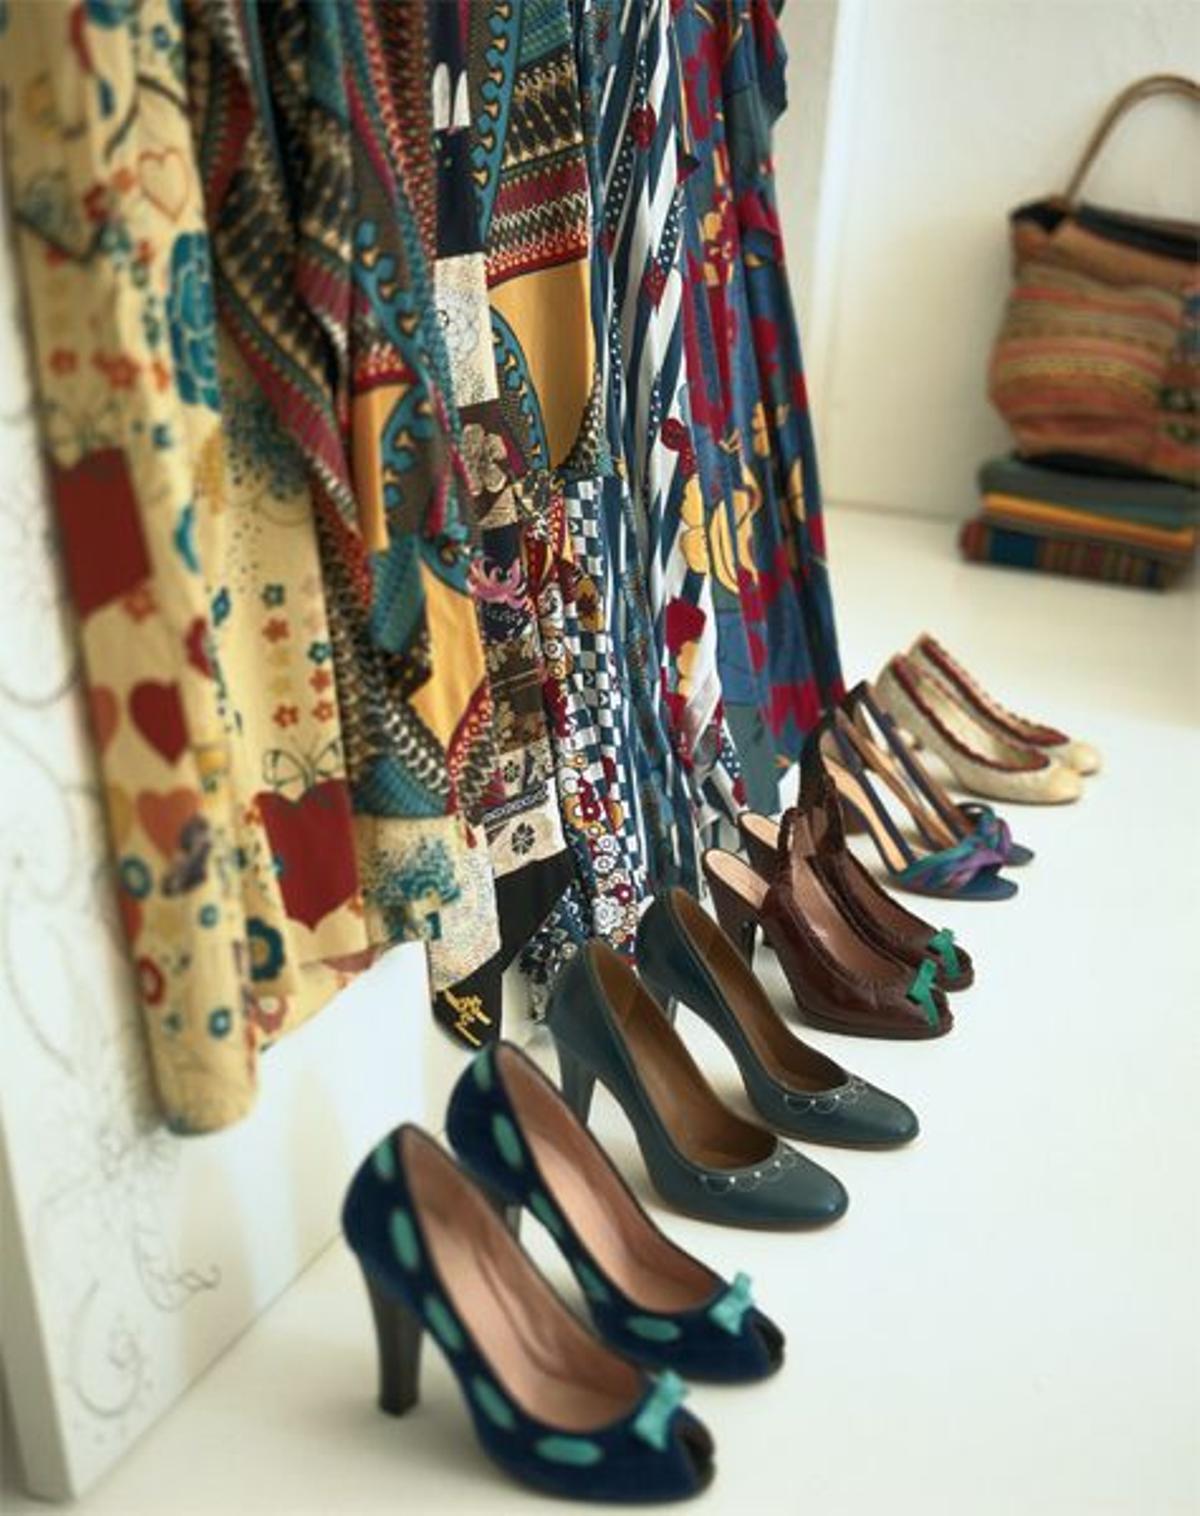 Vestidos de la diseñadora y su colección de zapatos.